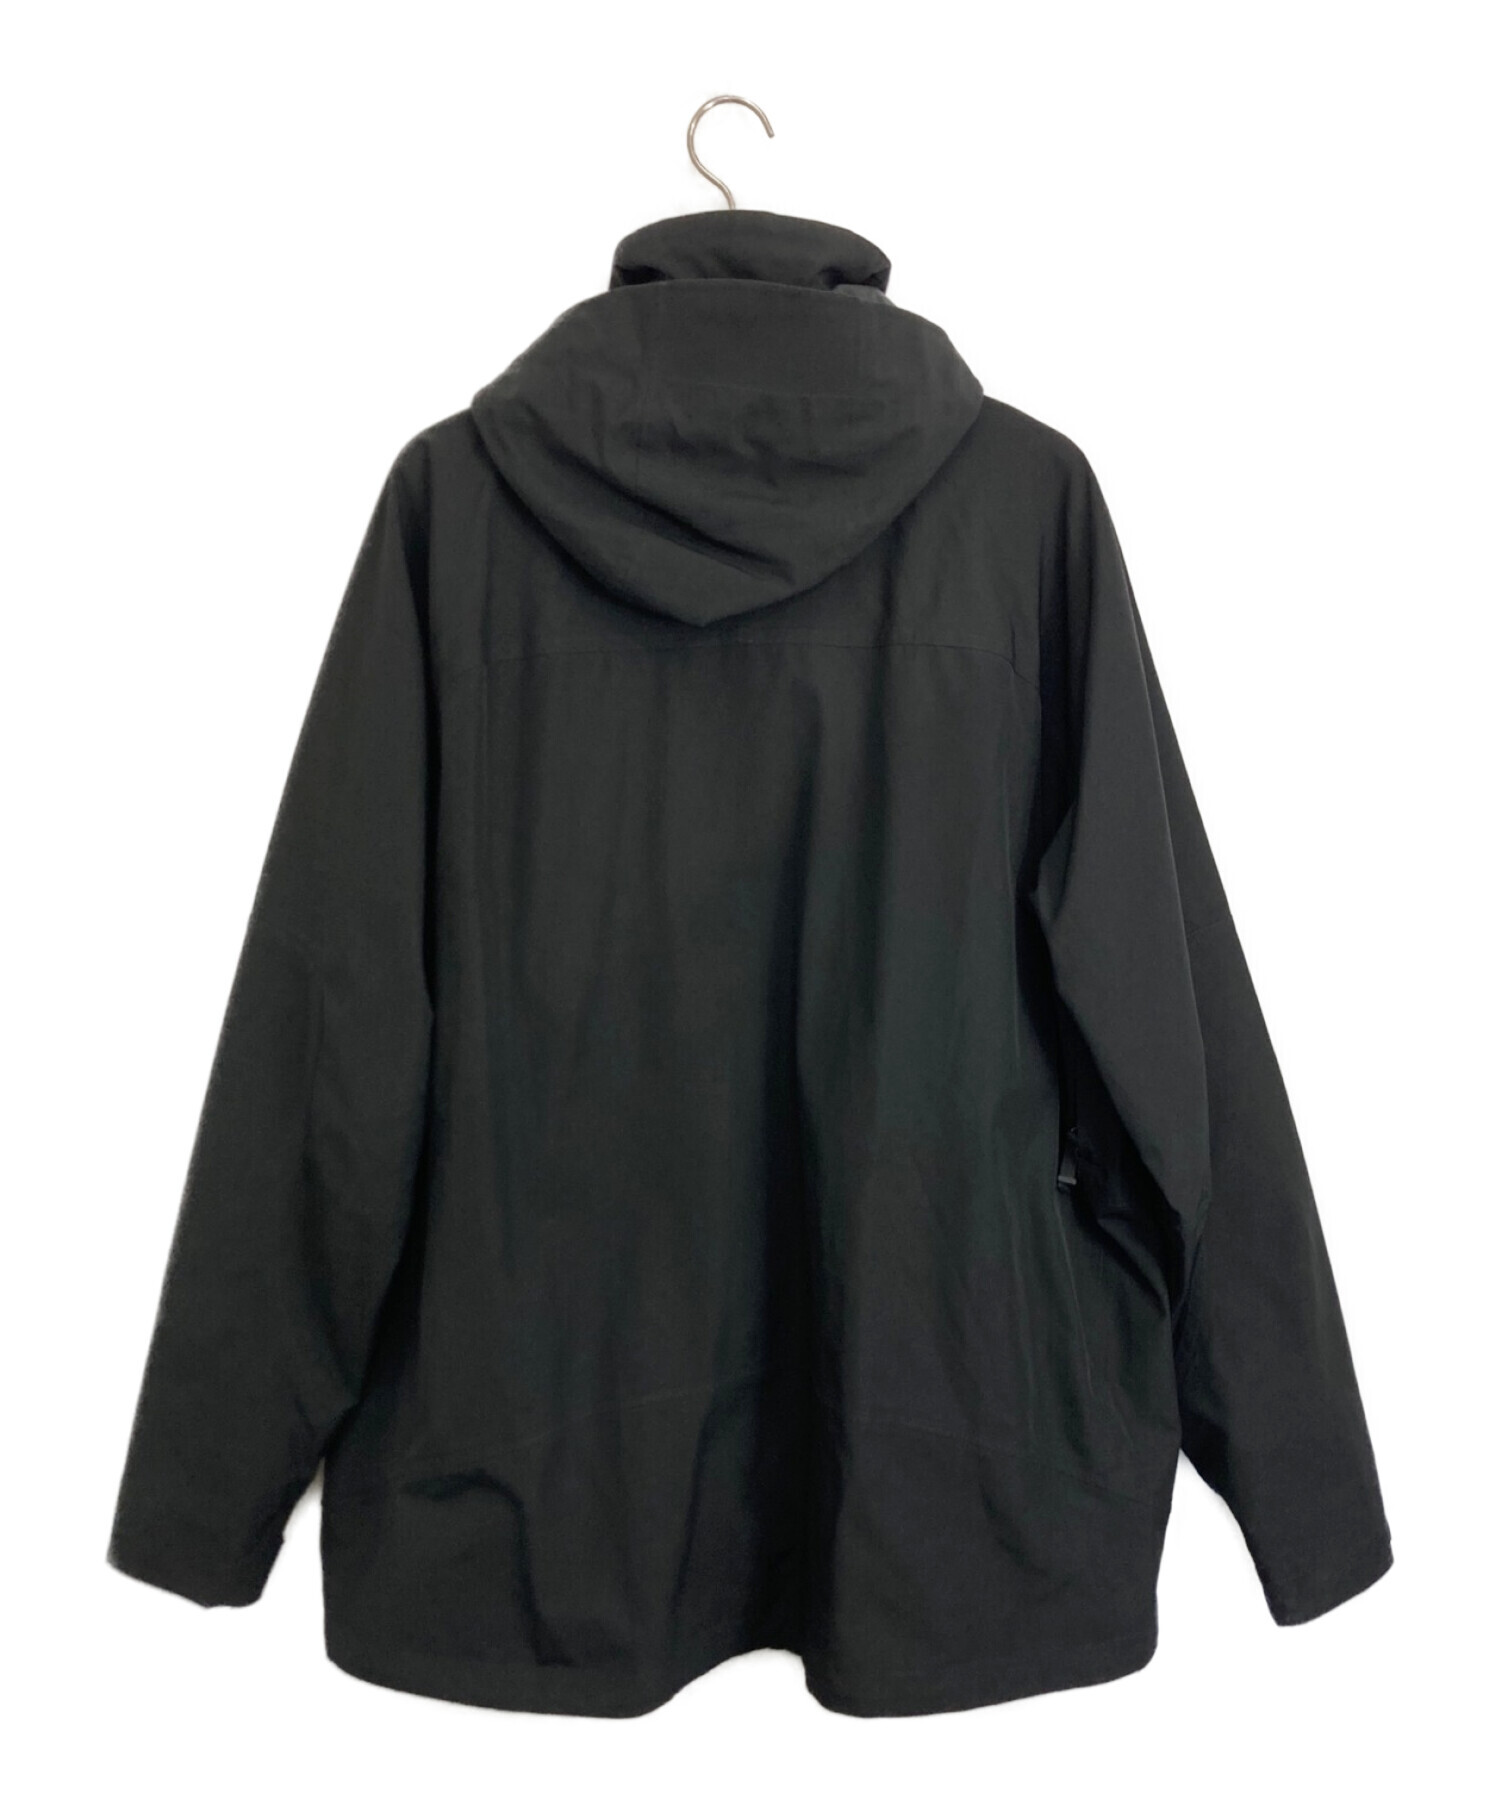 Patagonia (パタゴニア) シェルジャケット ブラック サイズ:XL